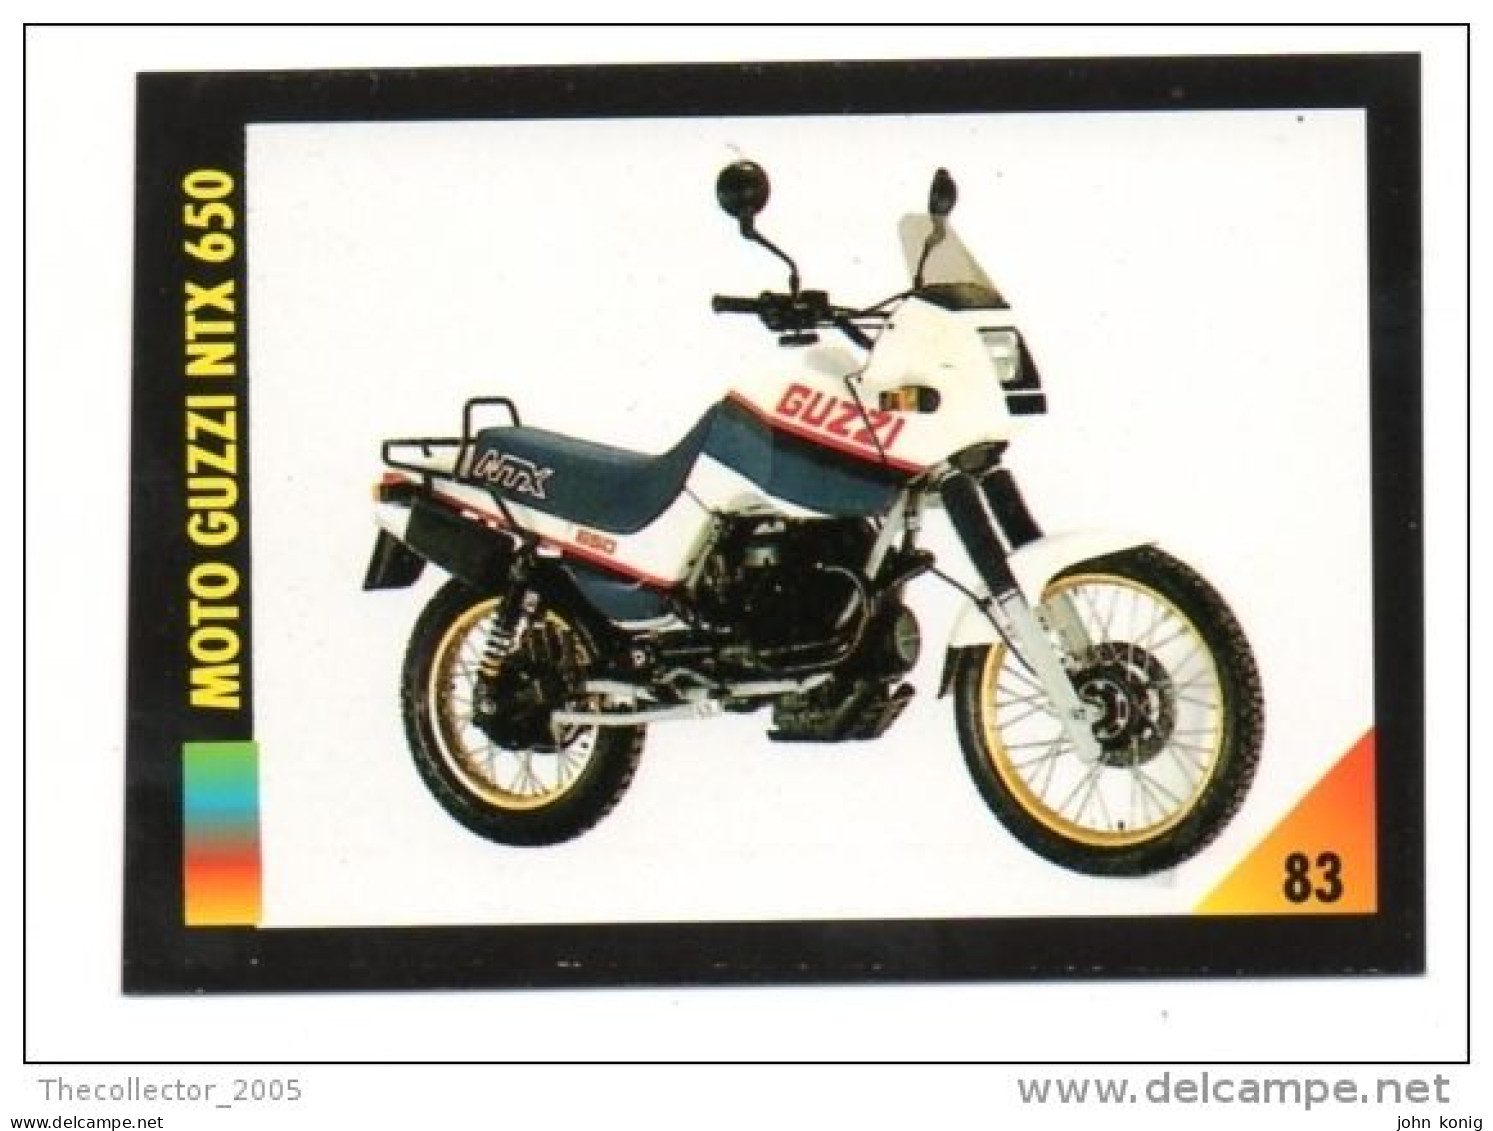 FIGURINA TRADING CARDS - LA MIA MOTO - MY MOTORBIKE - MASTERS EDIZIONI (1993) - MOTO GUZZI NTX 650 - Auto & Verkehr